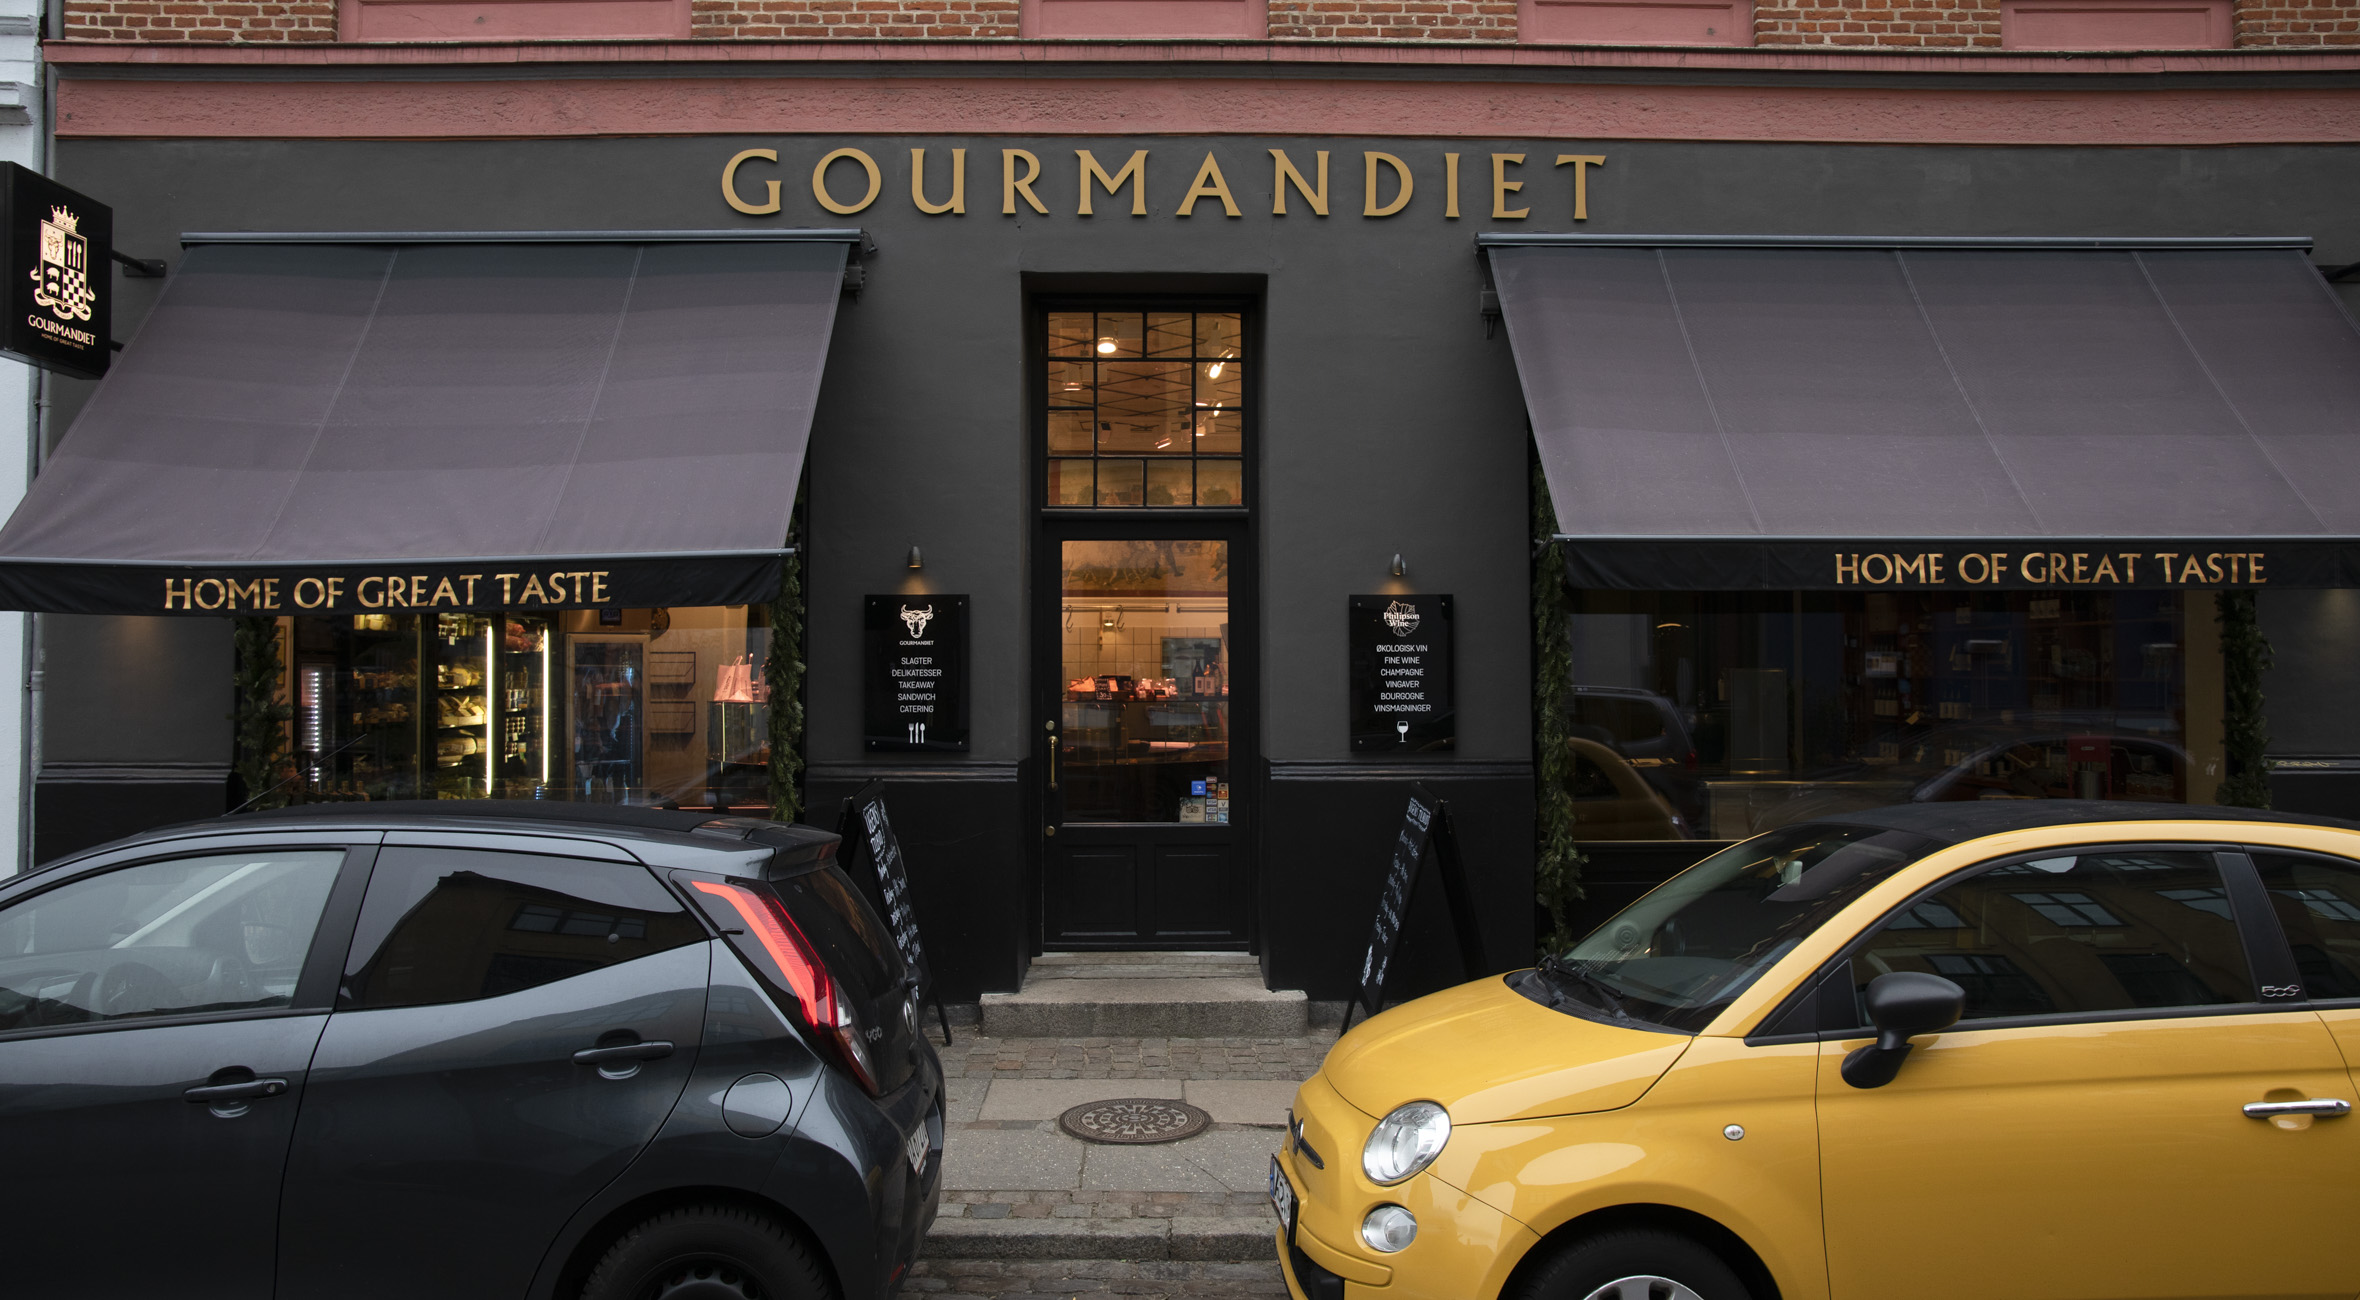 Frit valg til alt hos Gourmandiet på Østerbro – Tidligere fremhævet af Wall Street Journal som en af verdens bedste slagterbutikker